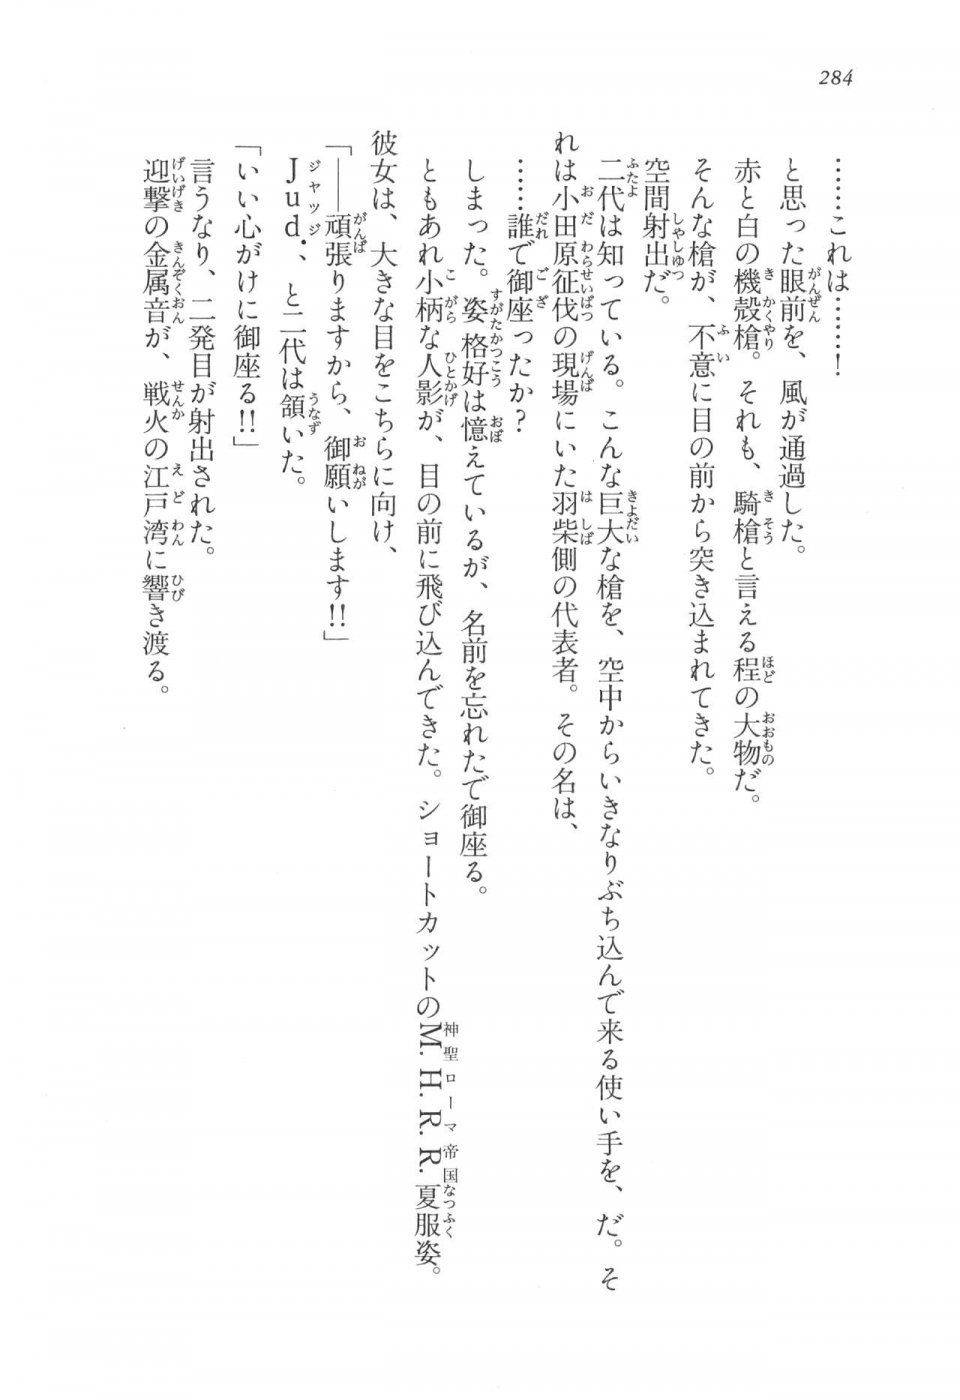 Kyoukai Senjou no Horizon LN Vol 17(7B) - Photo #284